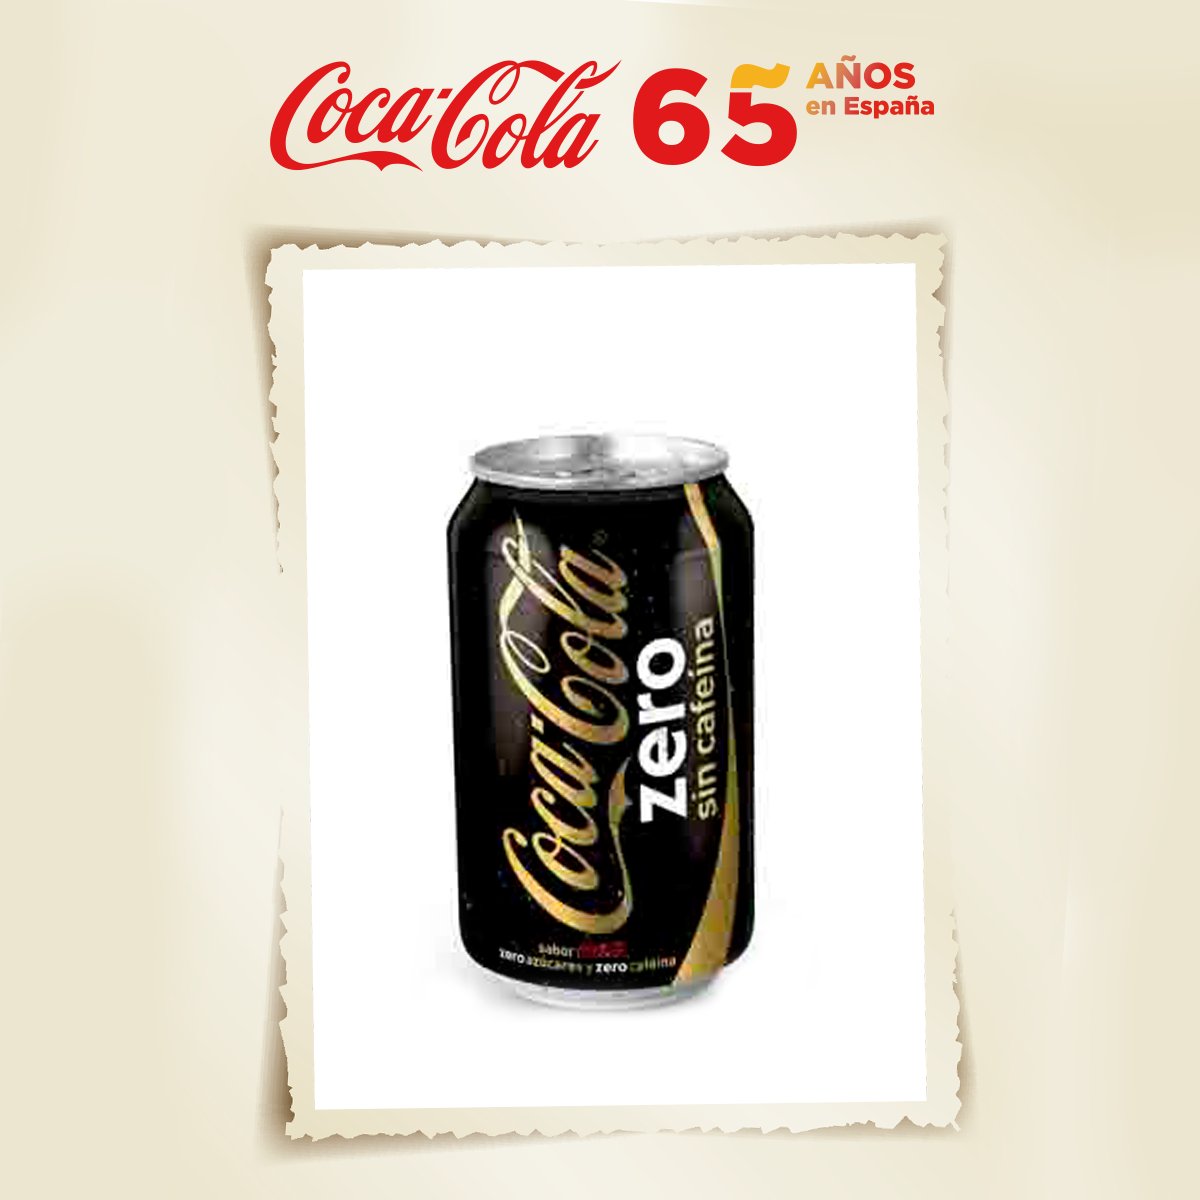 Coca-Cola Comunica on X: (41/65) El 15 de julio de 2010 lanzamos una  variedad de Coca-Cola zero sin cafeína. Era una apuesta por la innovación,  al tratarse de una Coca-Cola sin azúcar